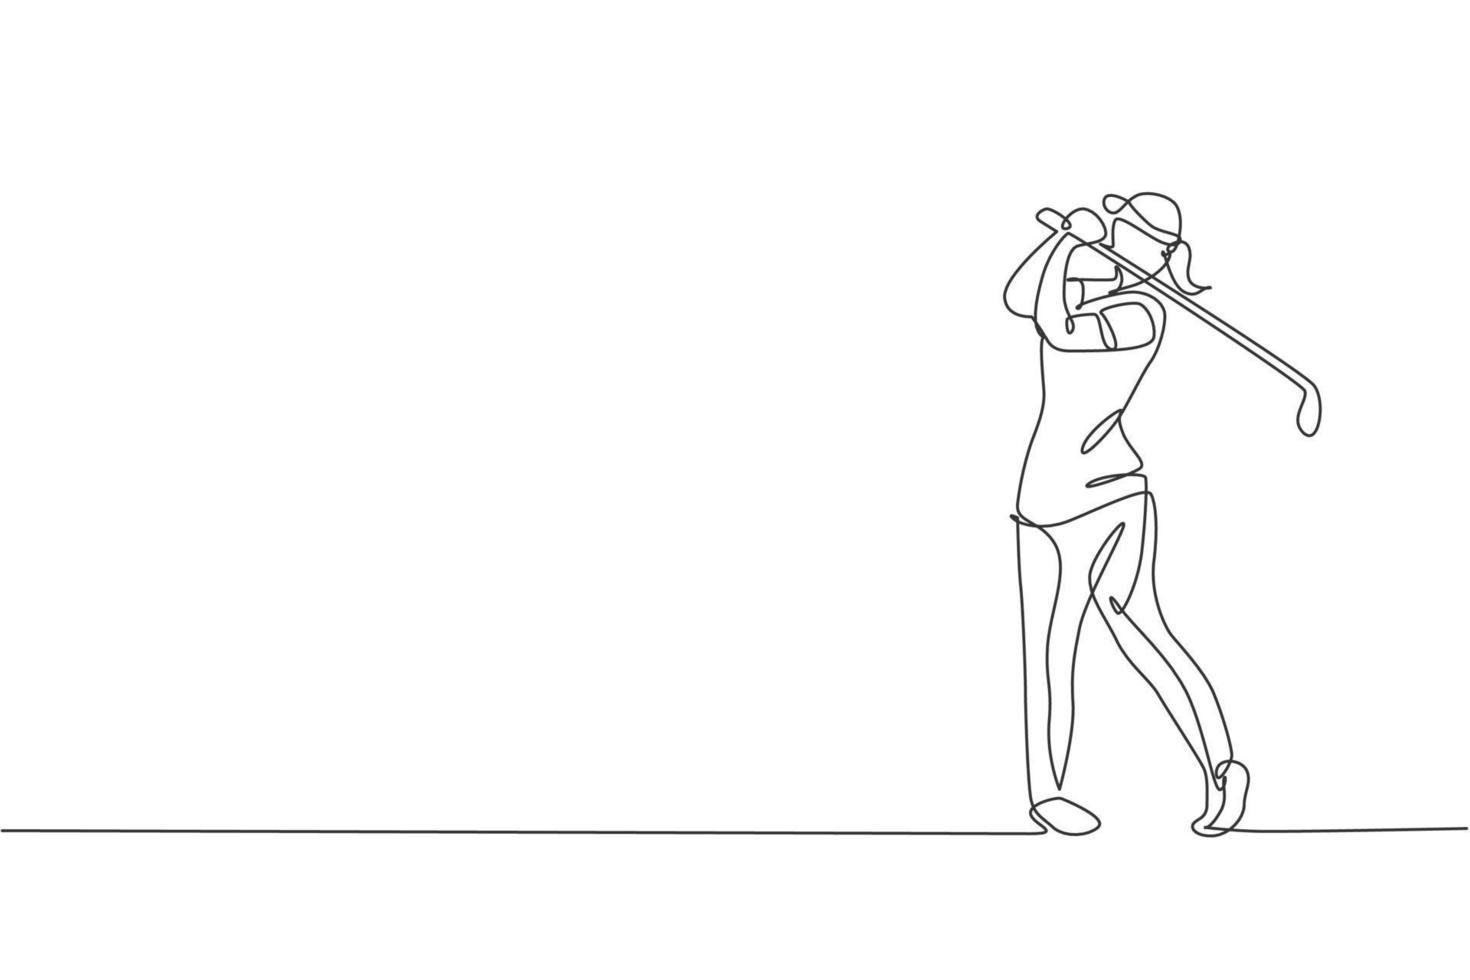 un disegno a linea continua di un giovane giocatore di golf oscillare la mazza da golf e colpire la palla. concetto di sport per il tempo libero. grafico dinamico dell'illustrazione di vettore del disegno di linea singola per i media di promozione del torneo